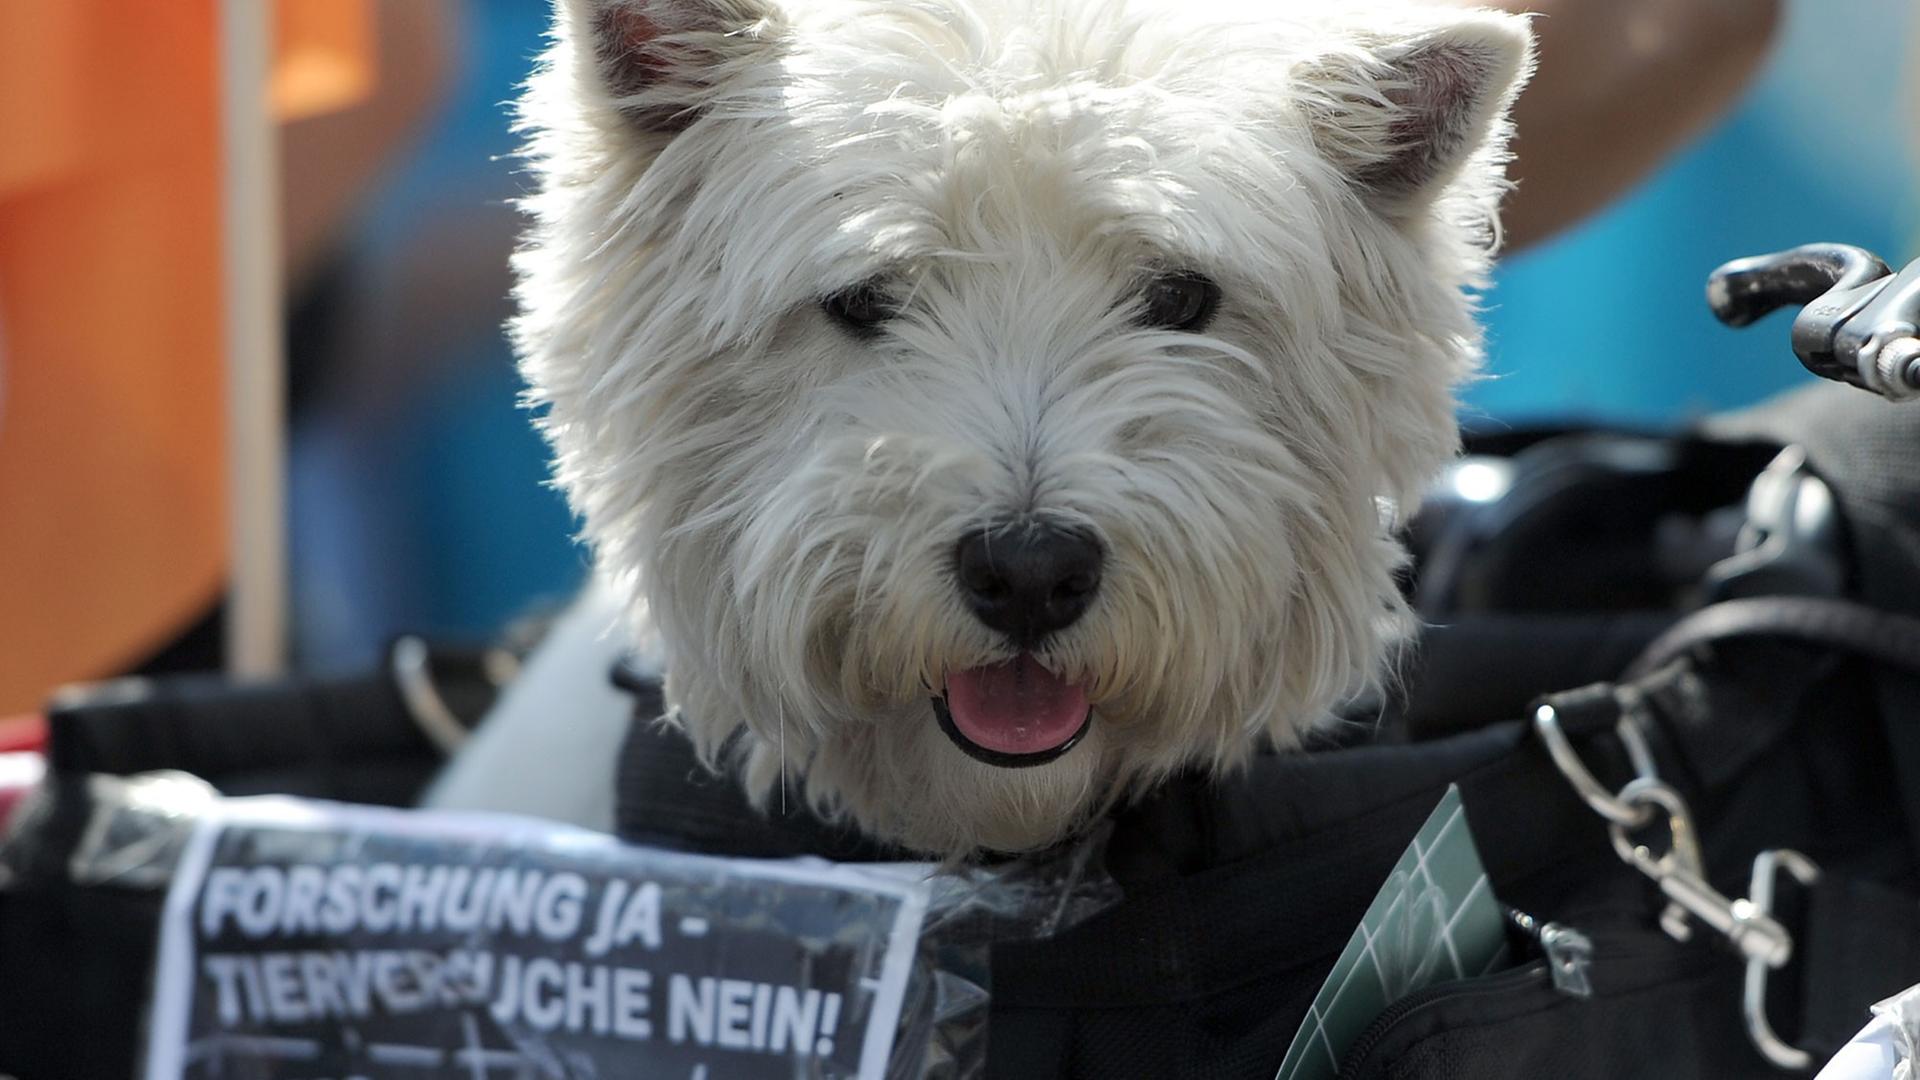 Ein Hund sitzt am 26.04.2014 bei einer Demonstration in Berlin in einem Korb auf dem das Motto der Protestaktion "Forschung ja - Tierversuche nein!"